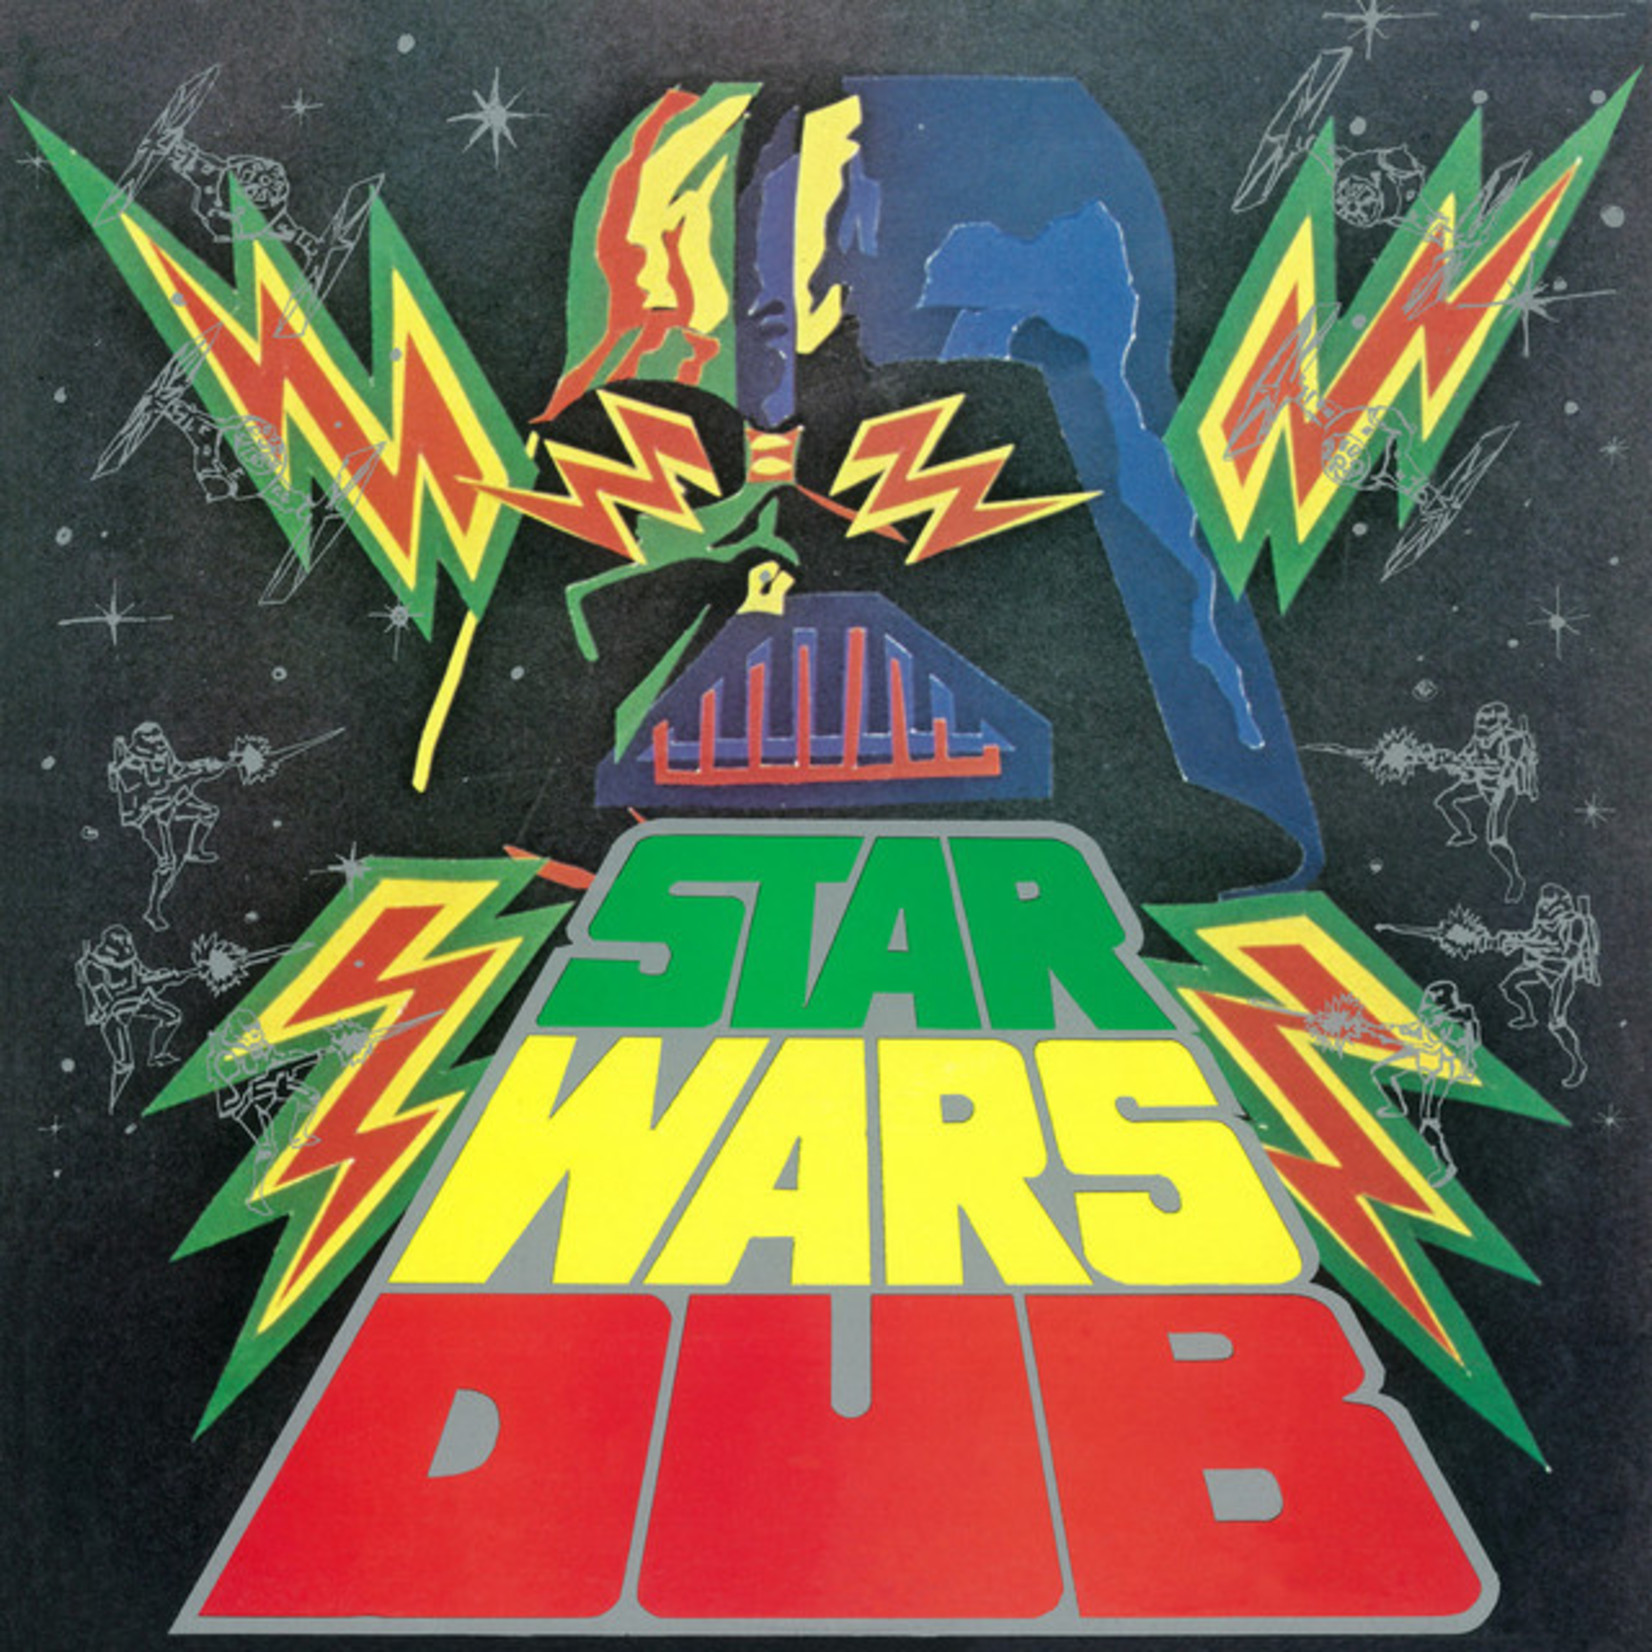 Phill Pratt – Star Wars Dub